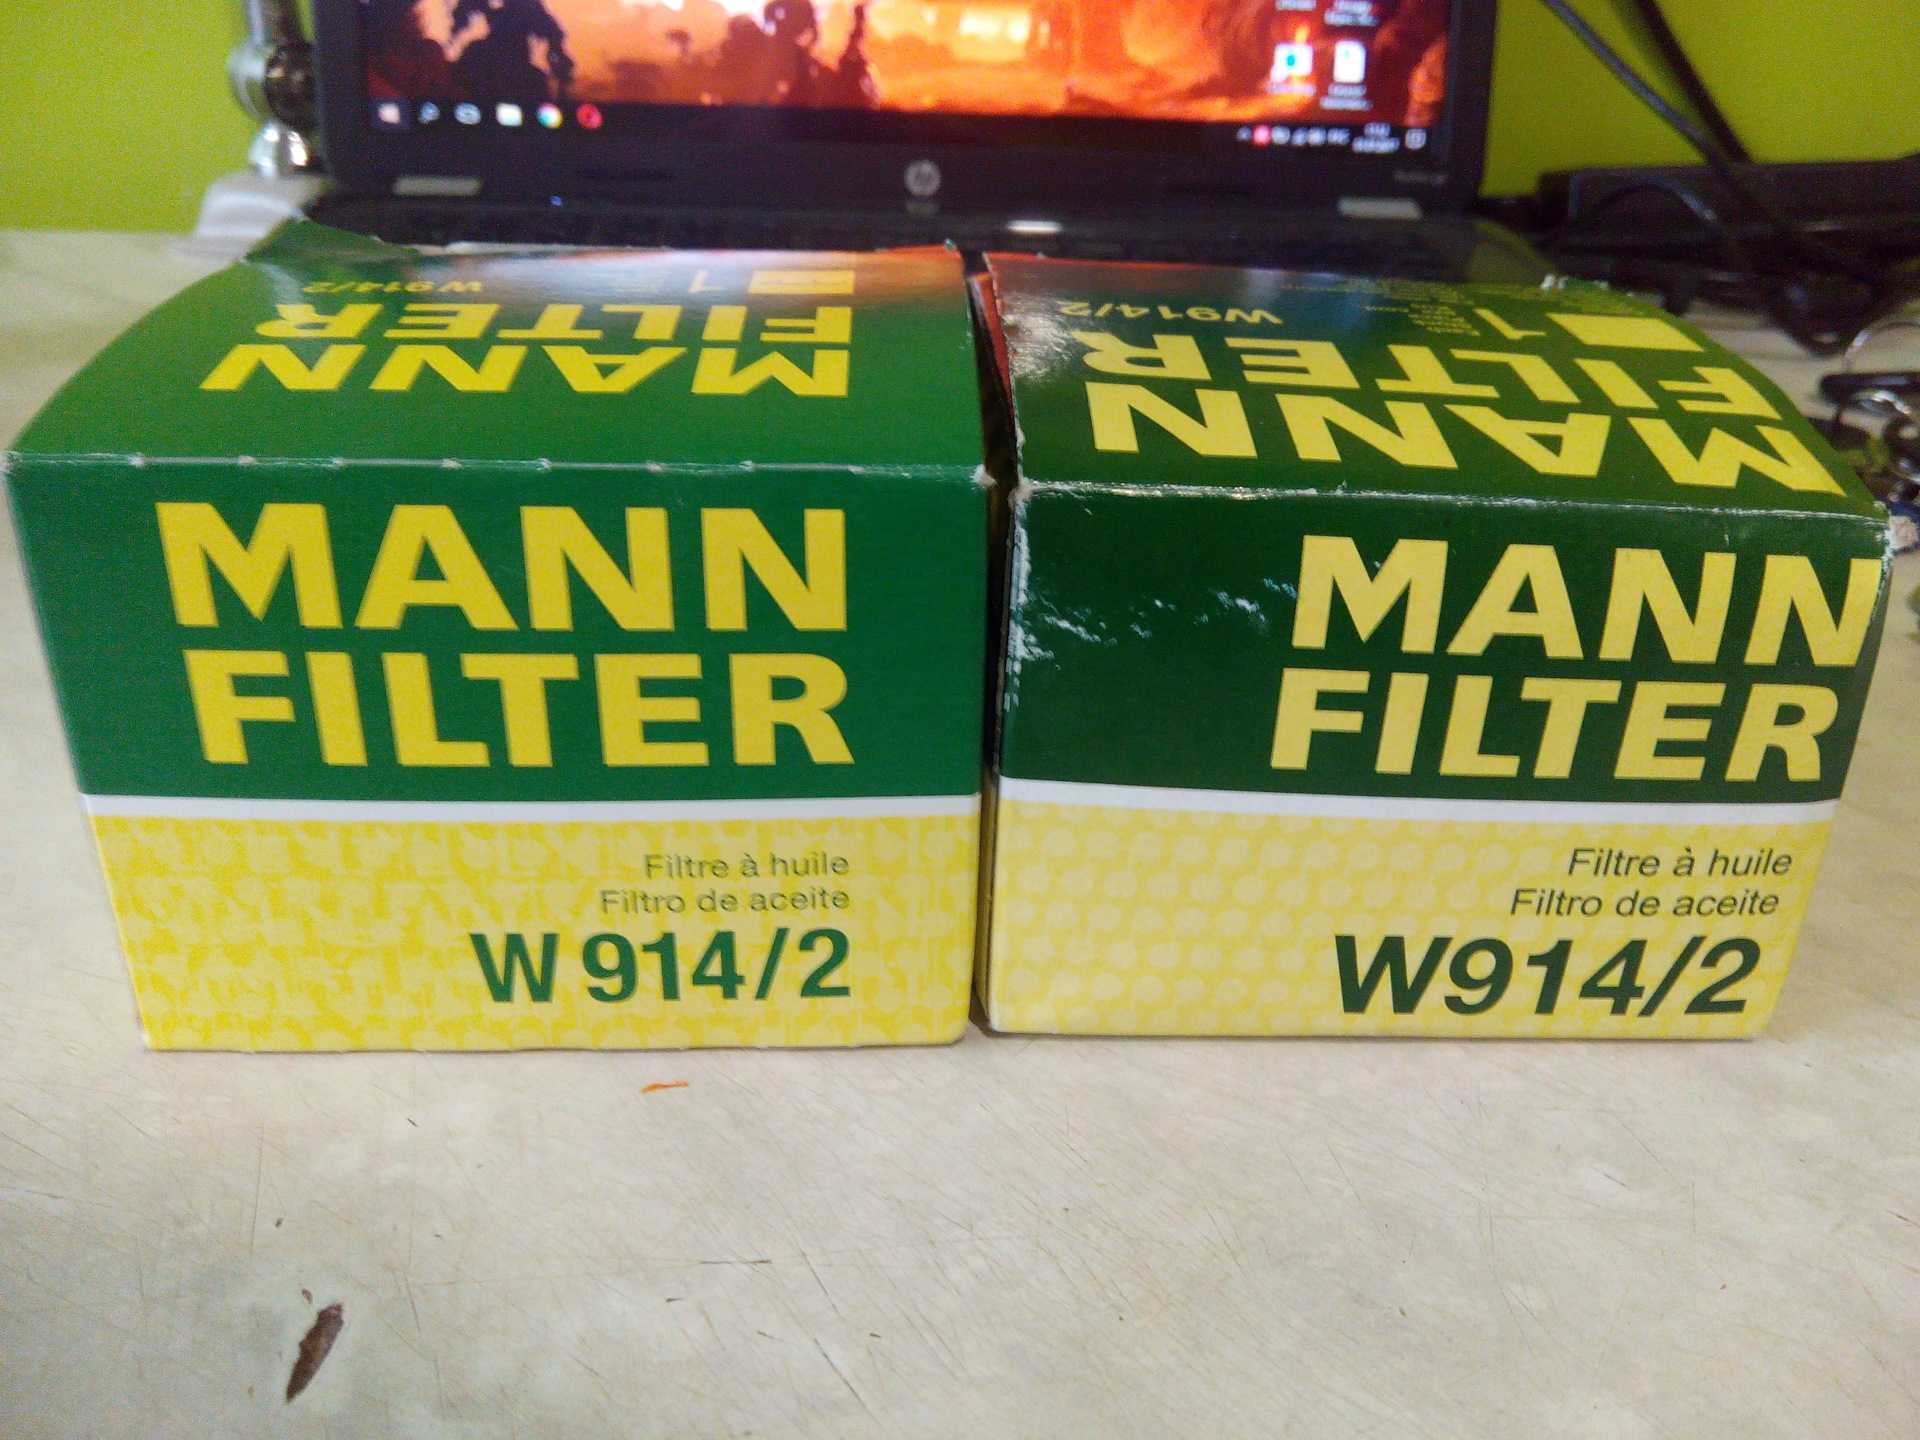 Как отличить фильтр манн. Фильтр Mann w914/2. Фильтр масляный Mann w9142. Фильтр масляный Mann-Filter w914/2.